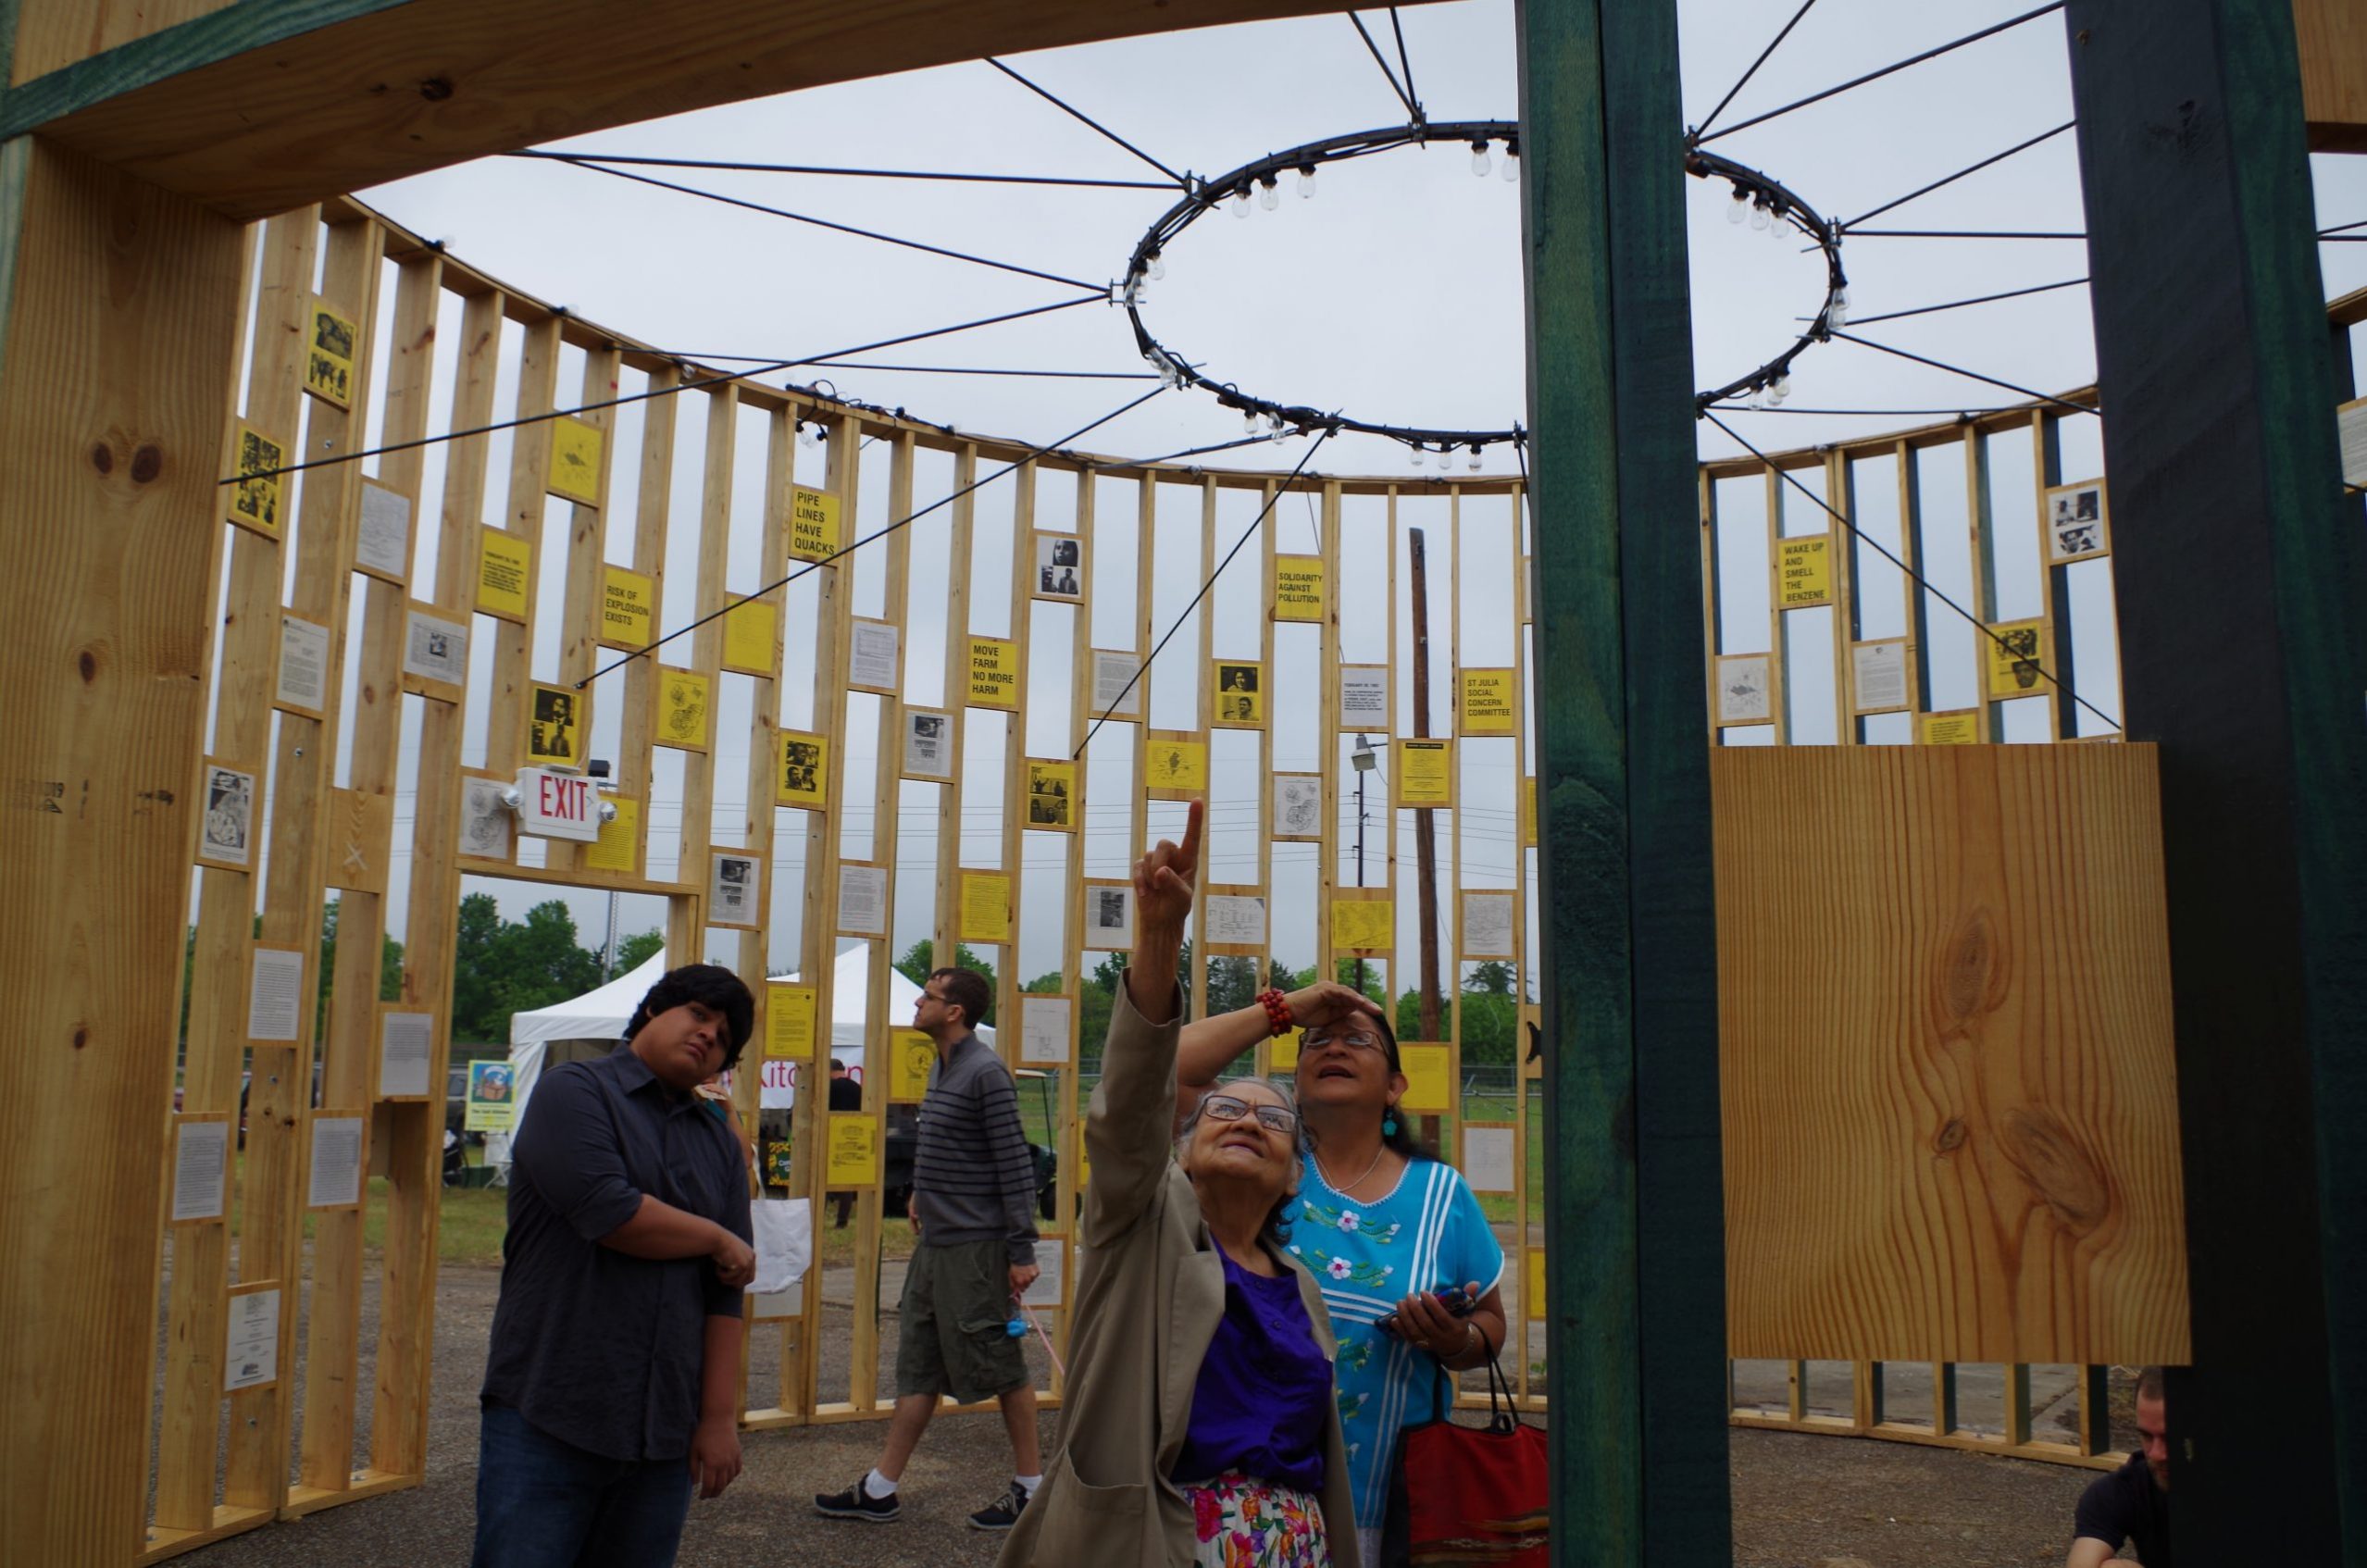 Locals view an art installation in Austin.